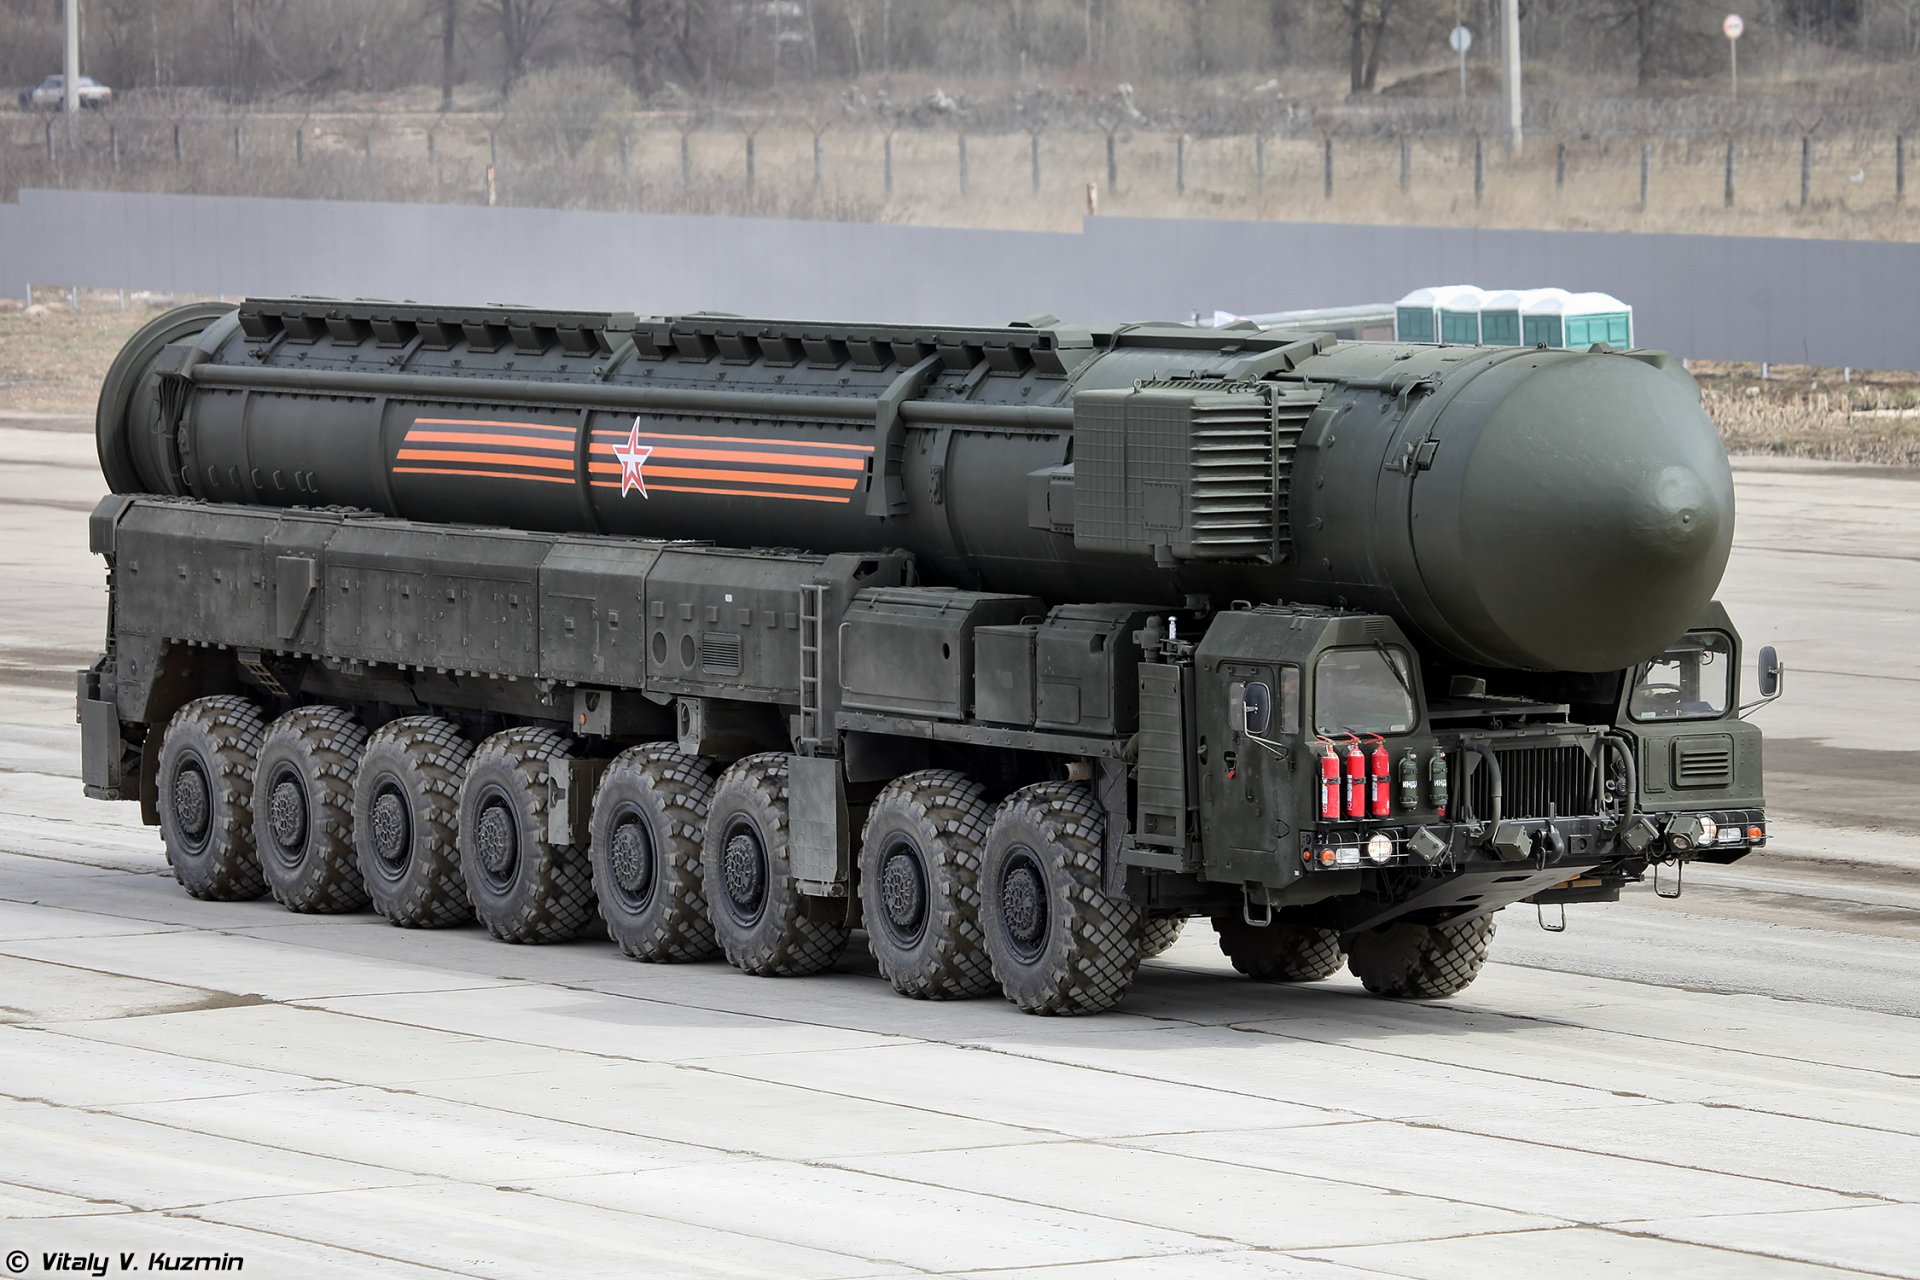 рс-24 ярс ракета мбр бомба ядерное оружие алабино парад победы 9 мая вс рф ракетные войска стратегического назначения рвсн